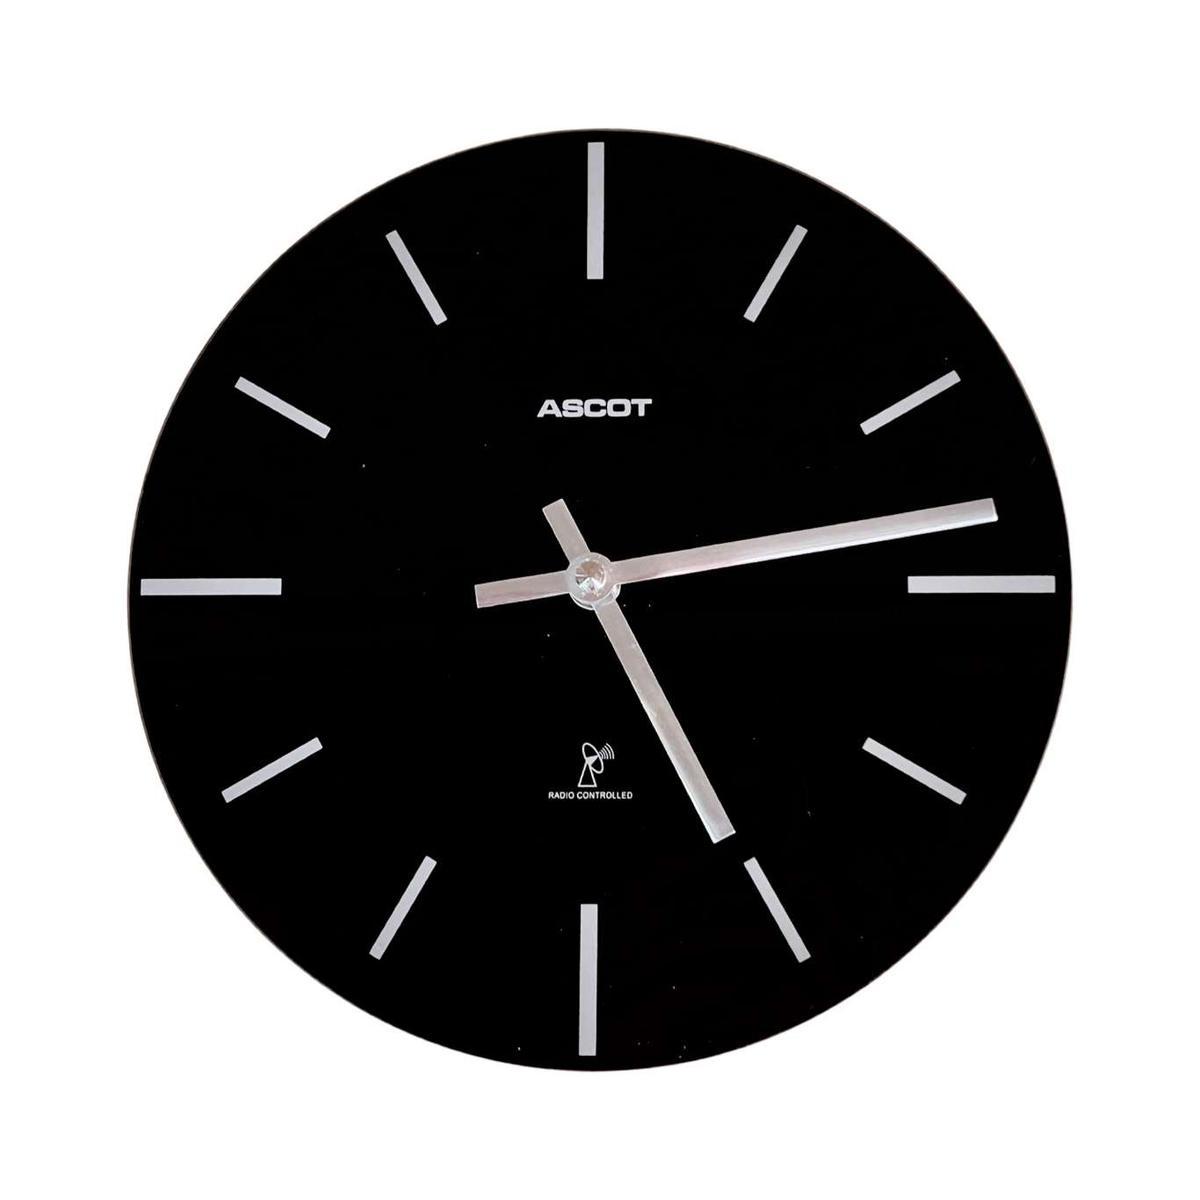 Designerski, minimalistyczny zegar ścienny, Ascot Niemcy nr. 5